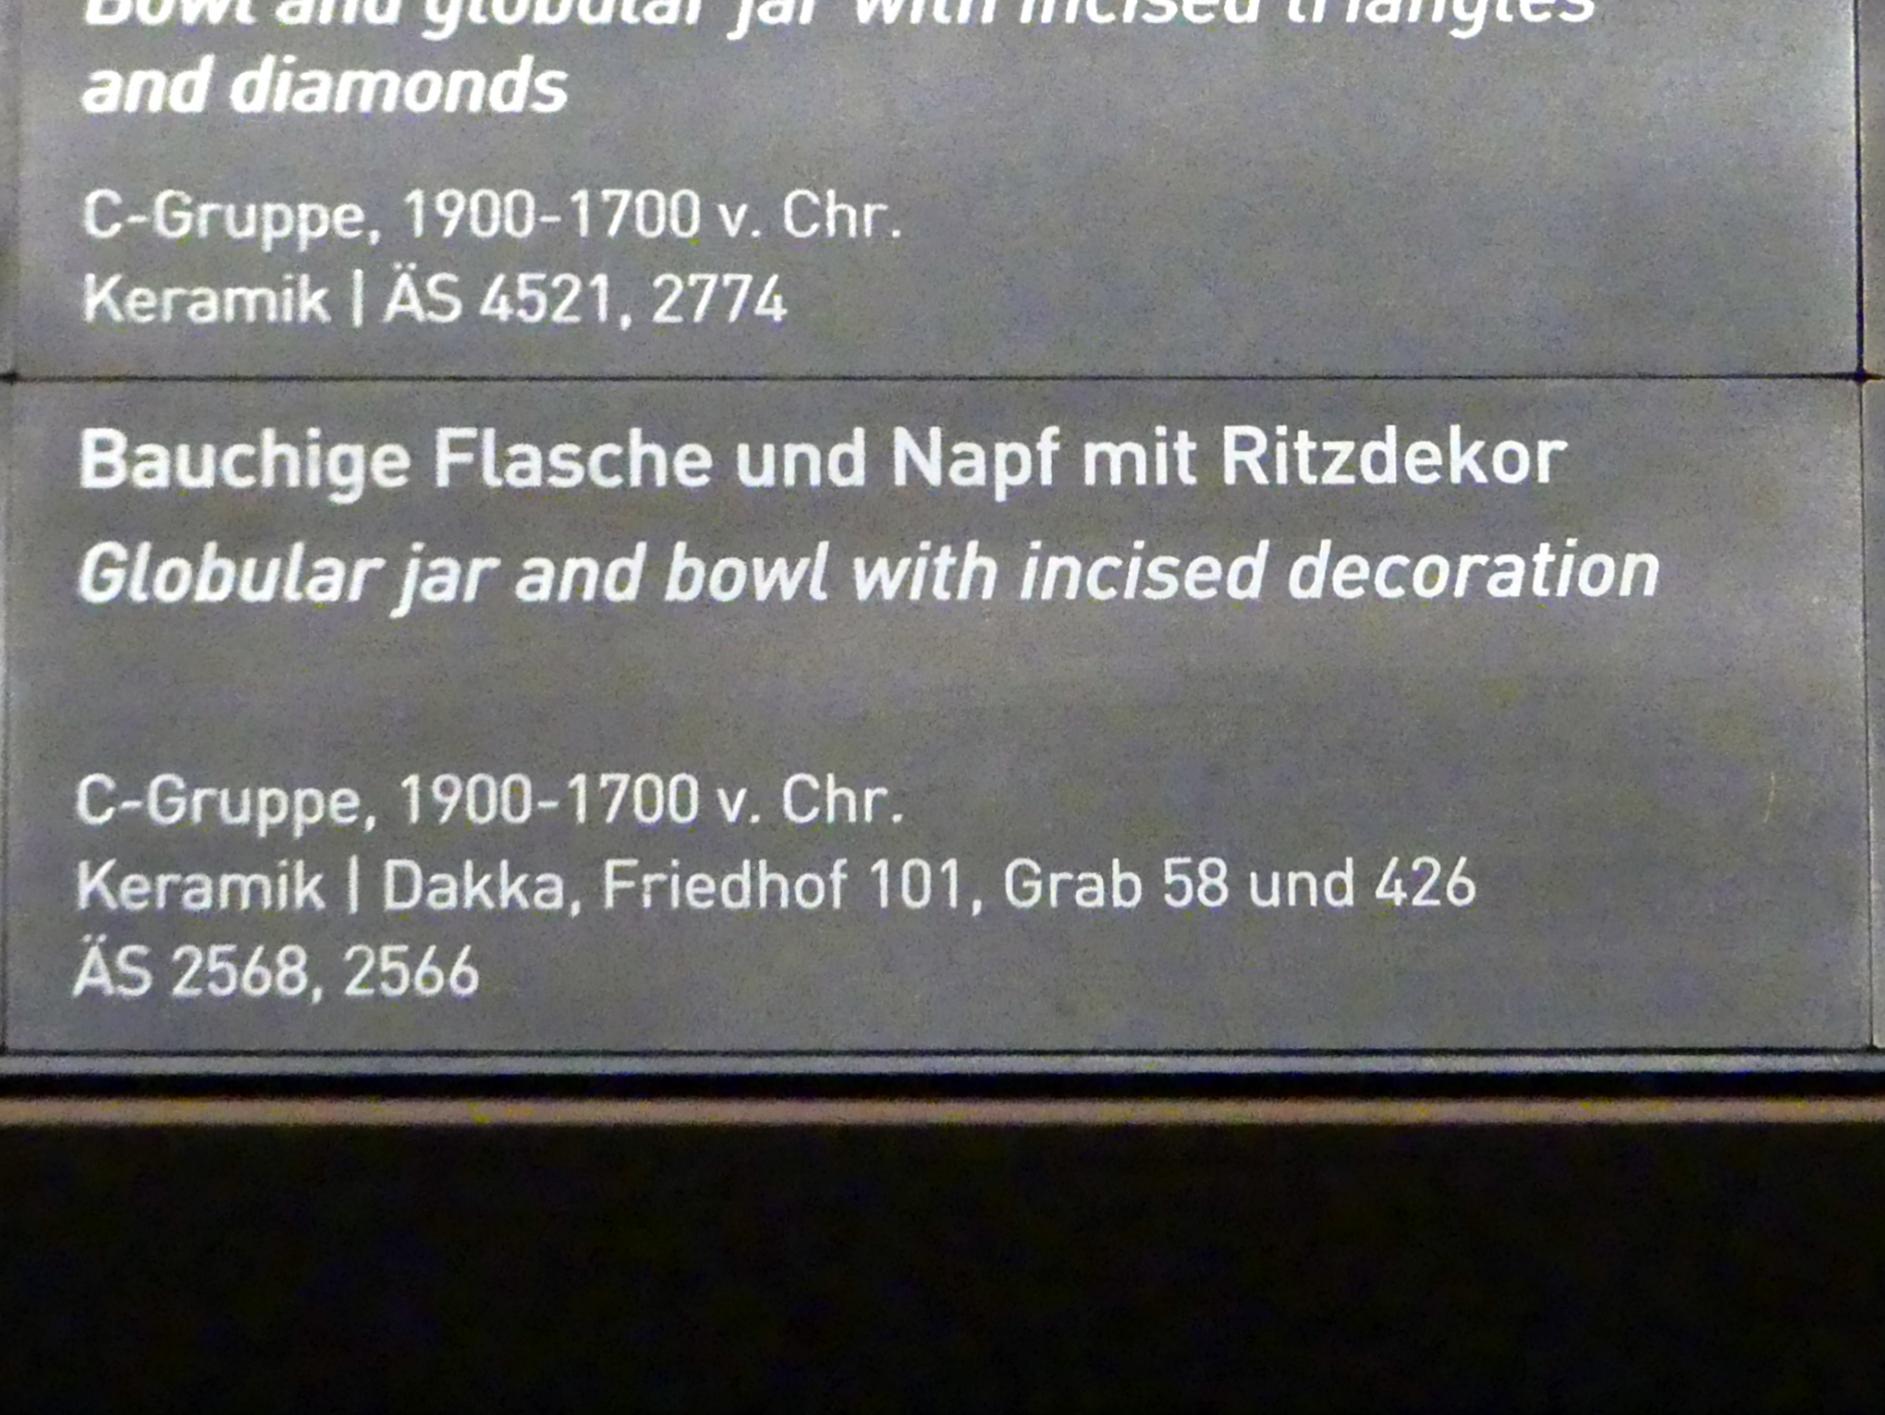 Napf mit Ritzdekor, C-Gruppe, 1900 - 1550 v. Chr., 1900 - 1700 v. Chr., Bild 2/2